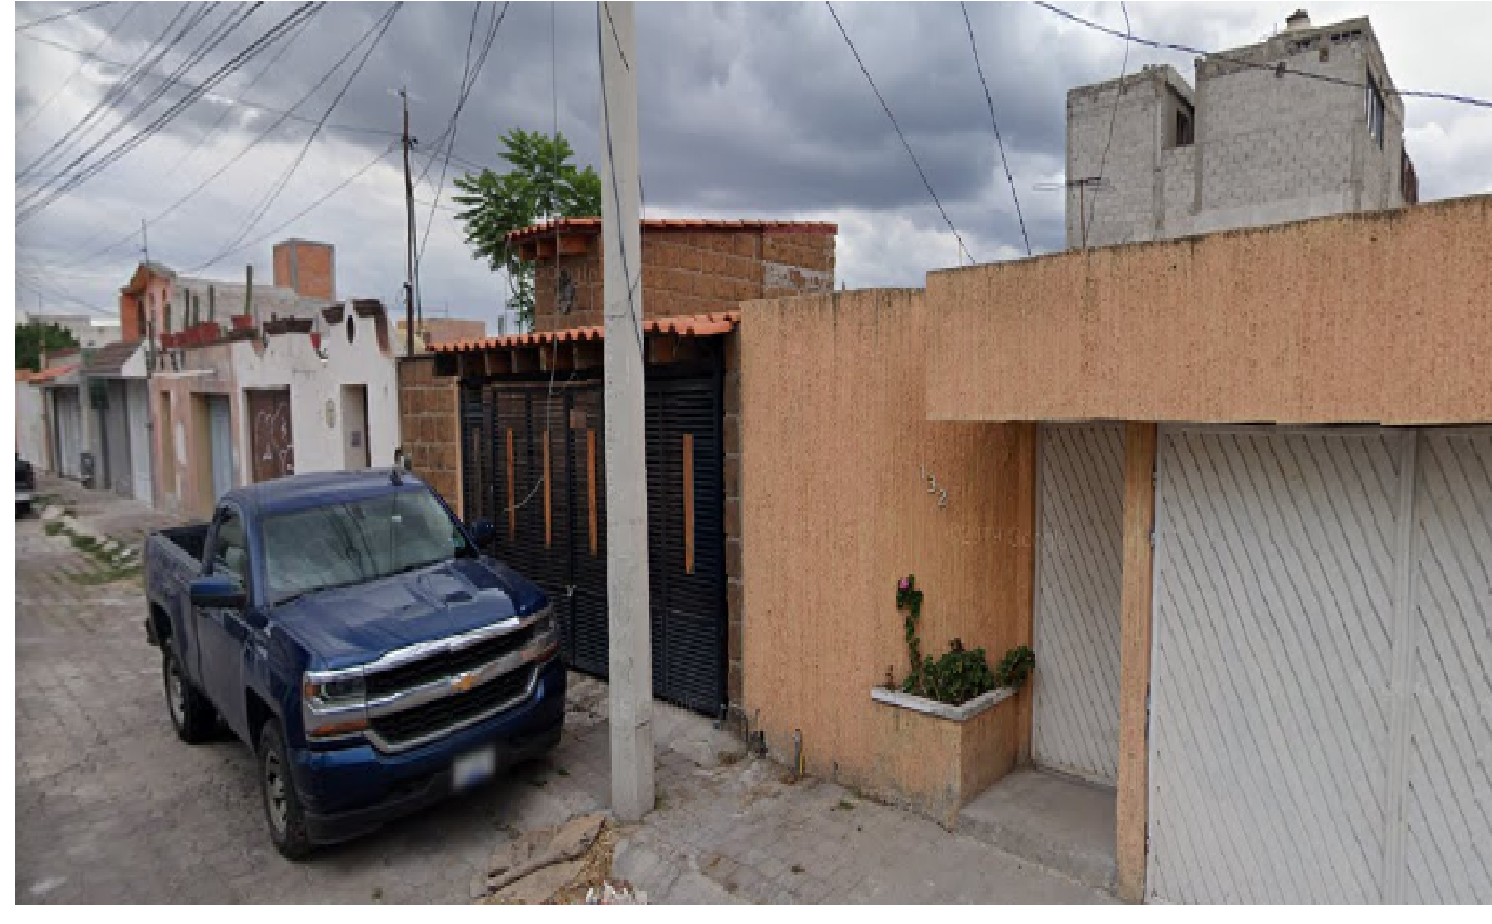 Opera casa de citas en colonia Insurgentes de Querétaro, la protege gobierno de Luis Nava